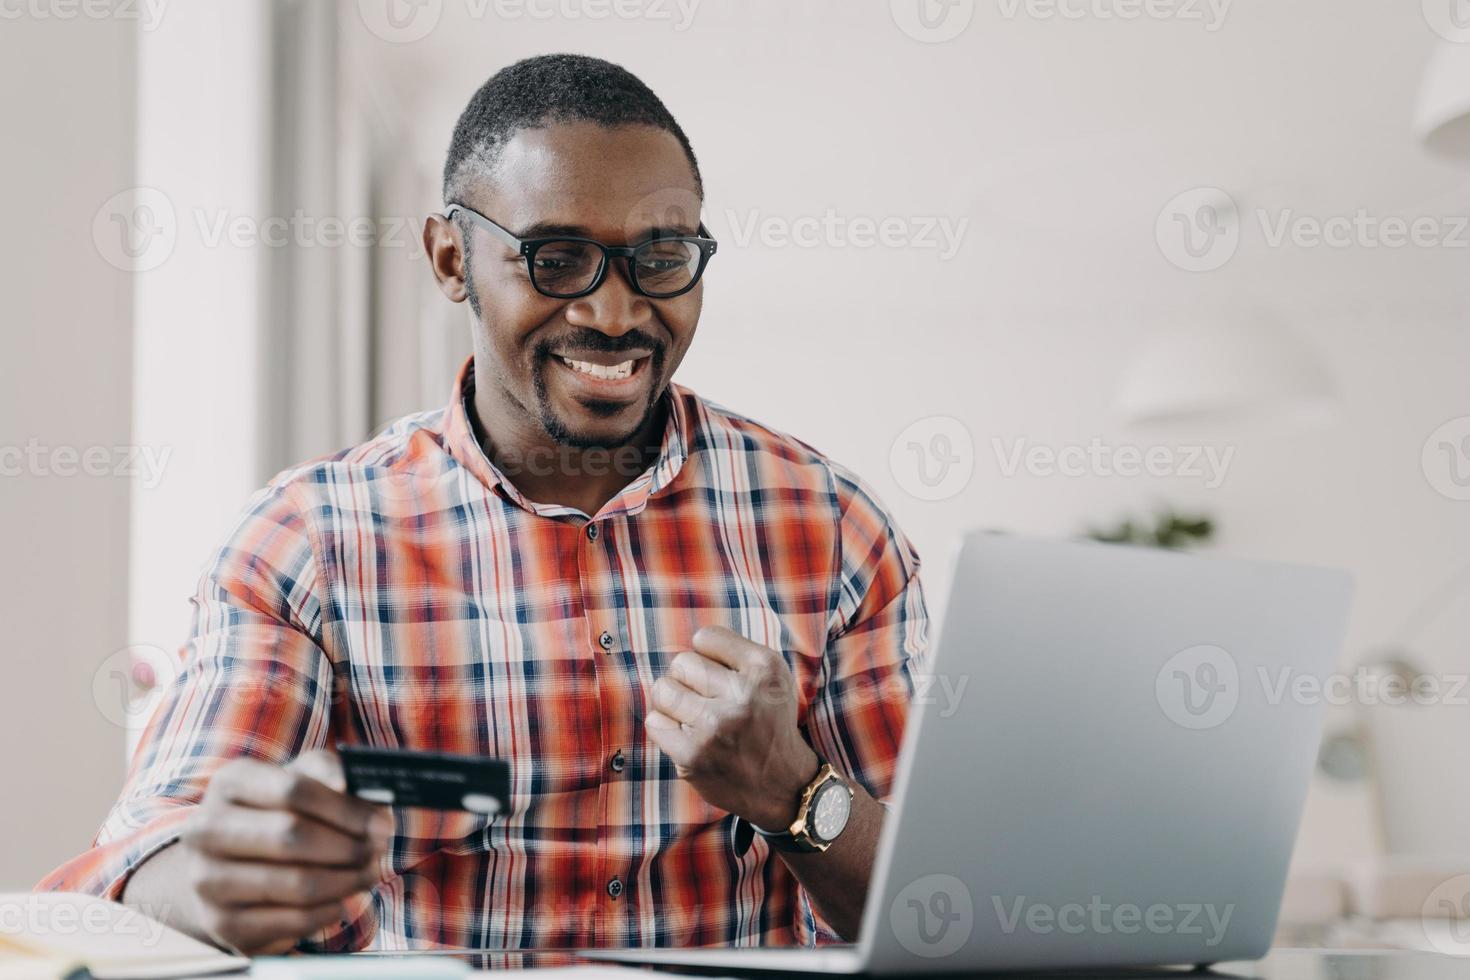 banca electrónica, comercio electrónico. hombre afroamericano con tarjeta de crédito utiliza el servicio en línea del banco electrónico en la computadora portátil foto